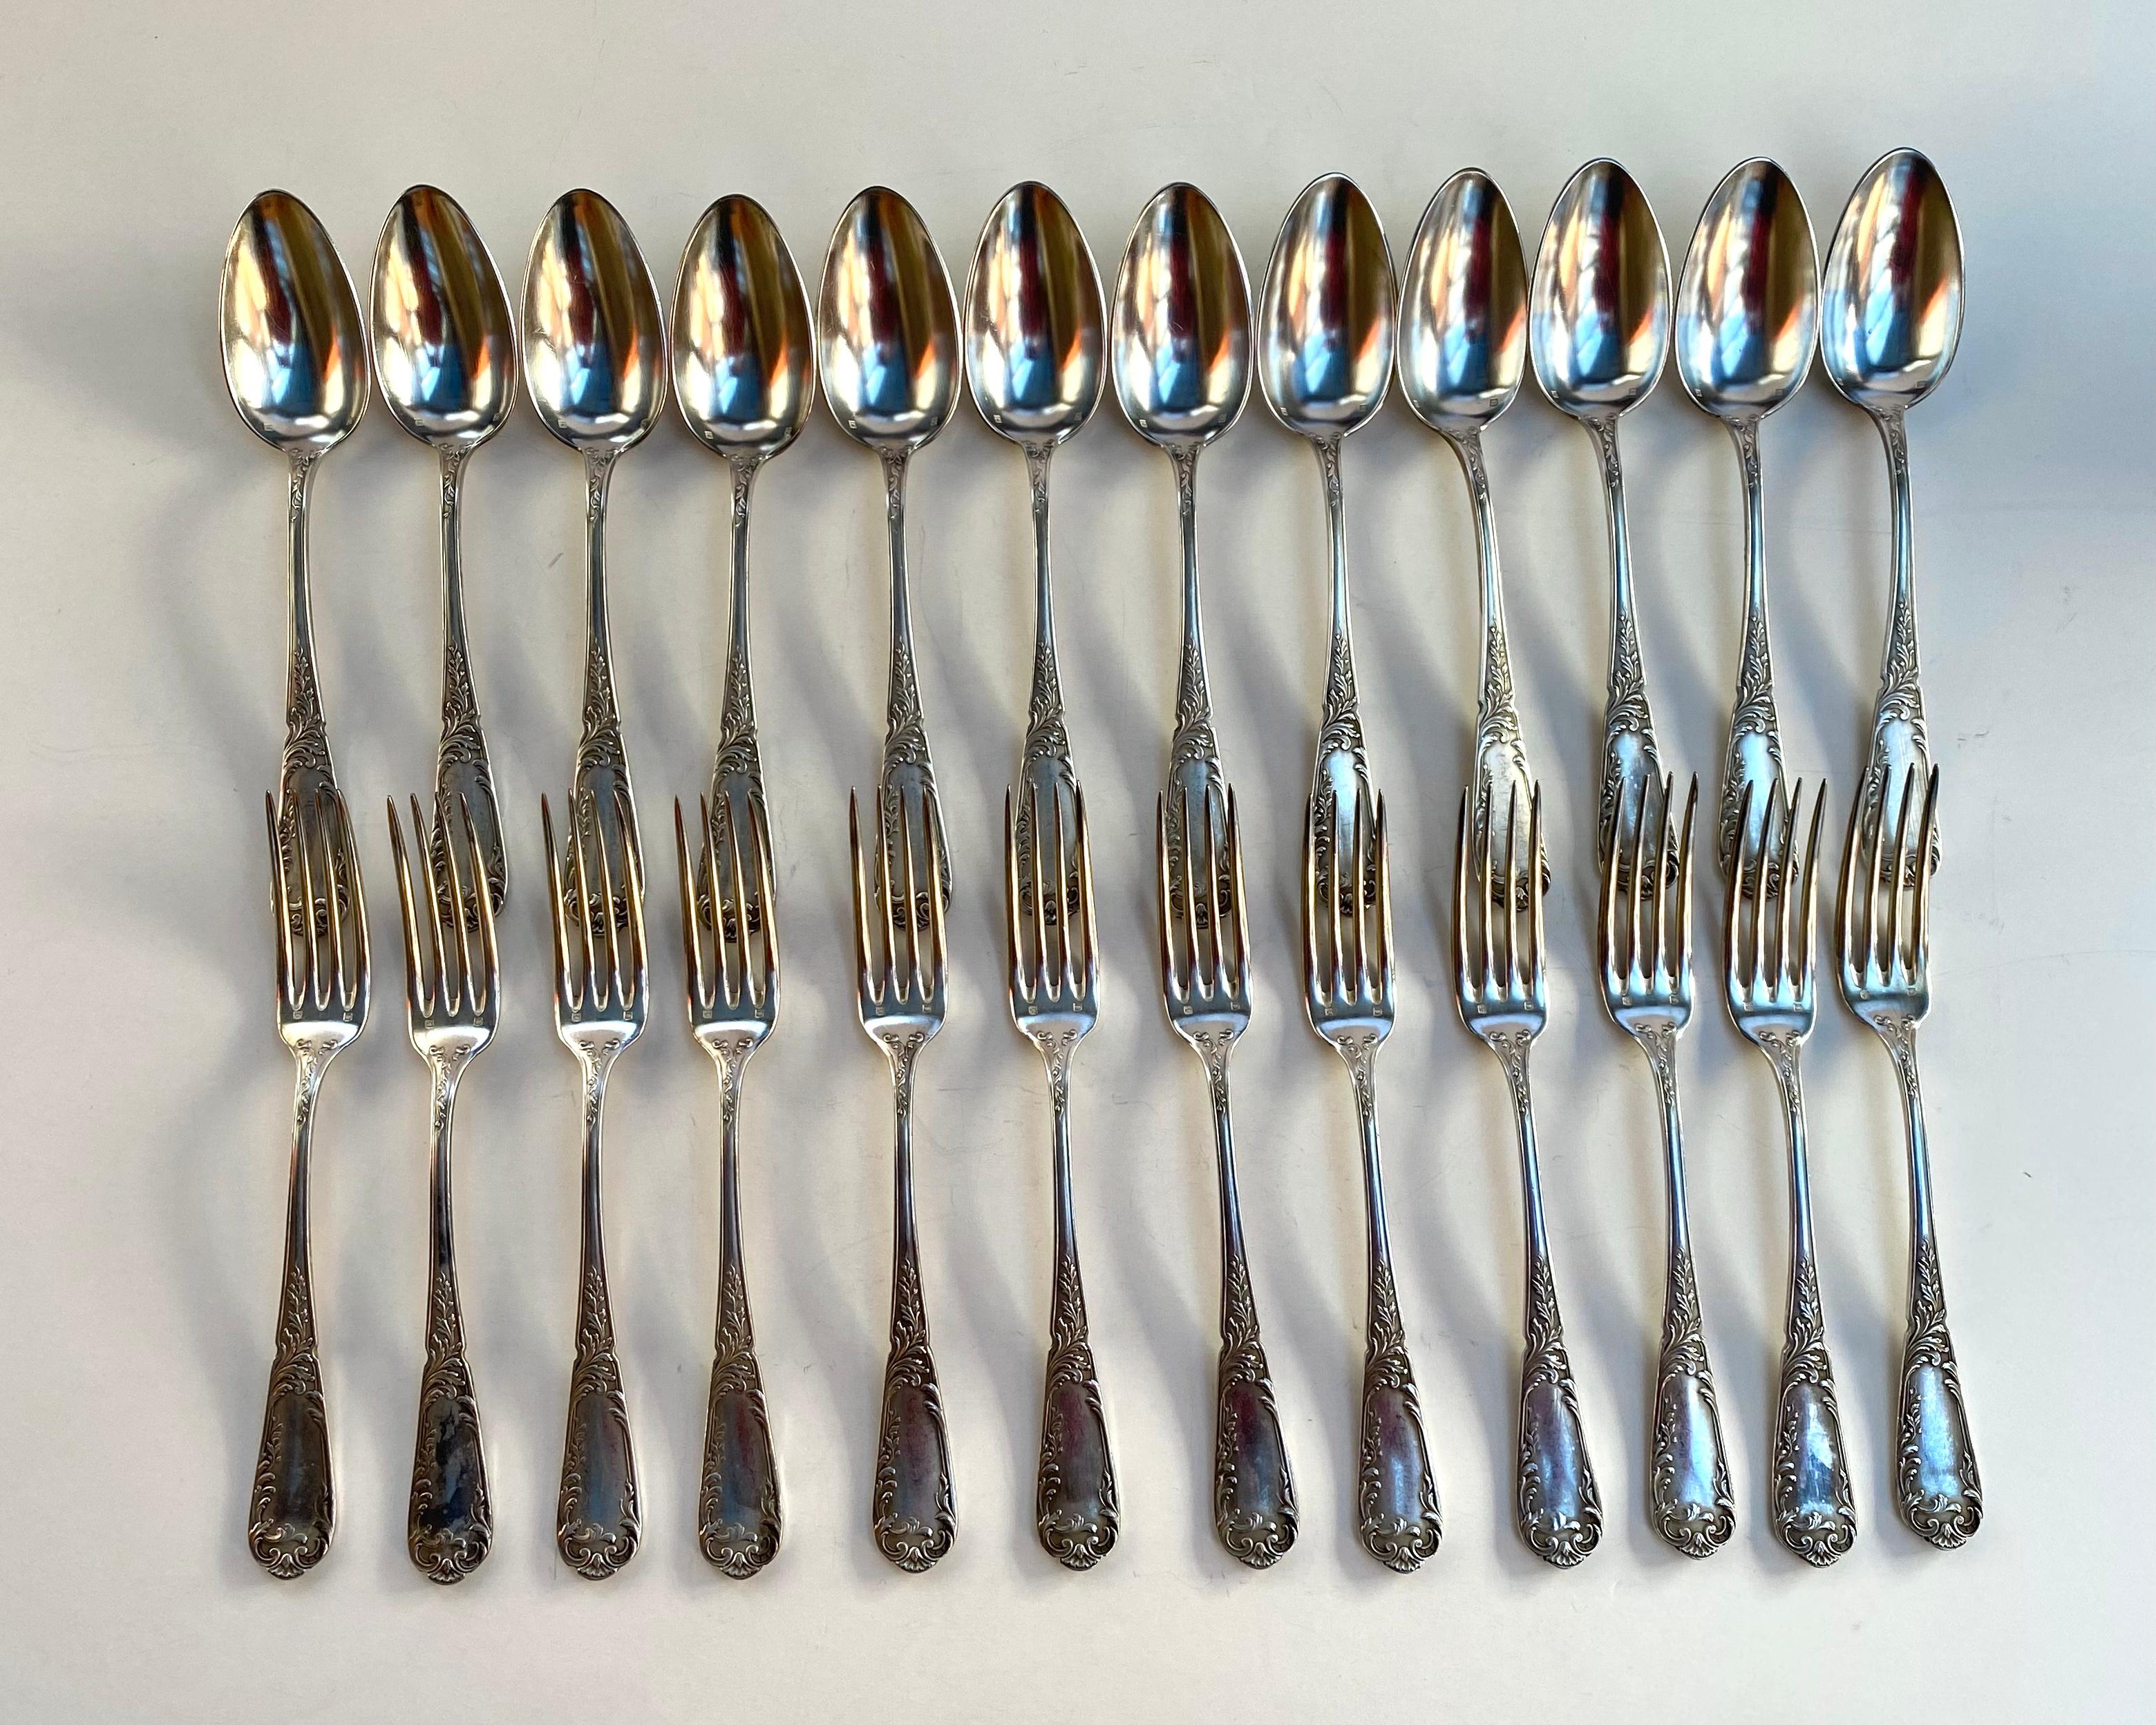 Vintage Silver Plate Utensils 12 Spoons 12 Forks France 1950s For Sale 1